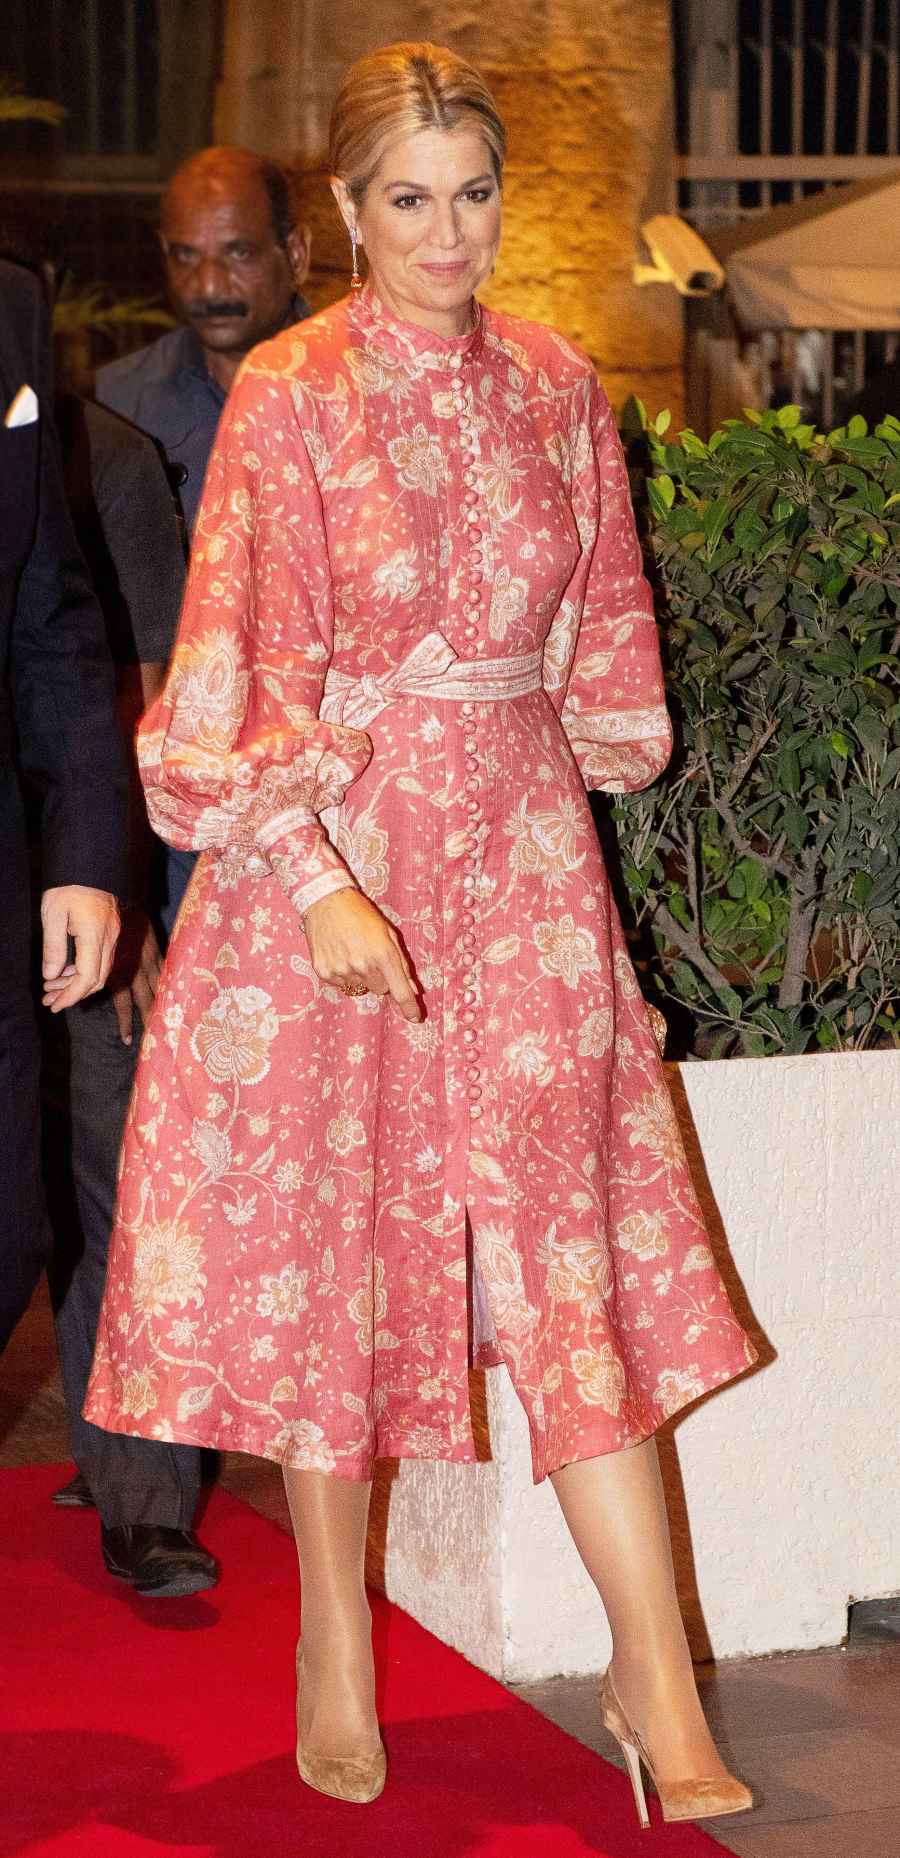 Queen Maxima Floral Dress October 16, 2019